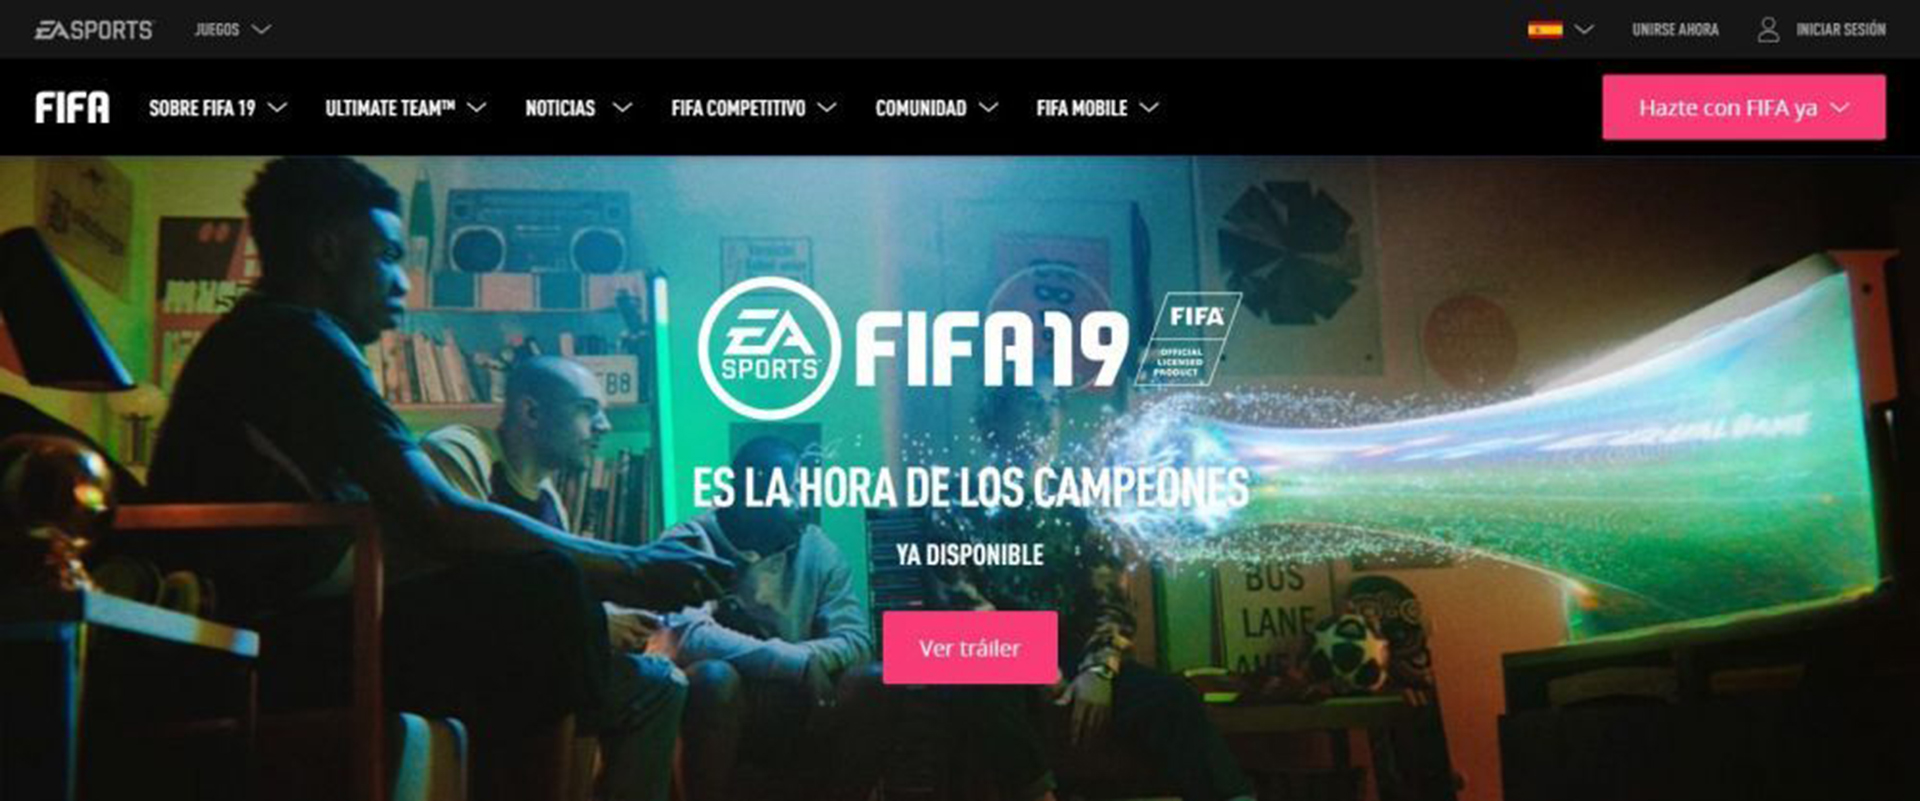 Immagine di riferimento di EA Sports FIFA 19 (Foto: FILE / EA Sports)